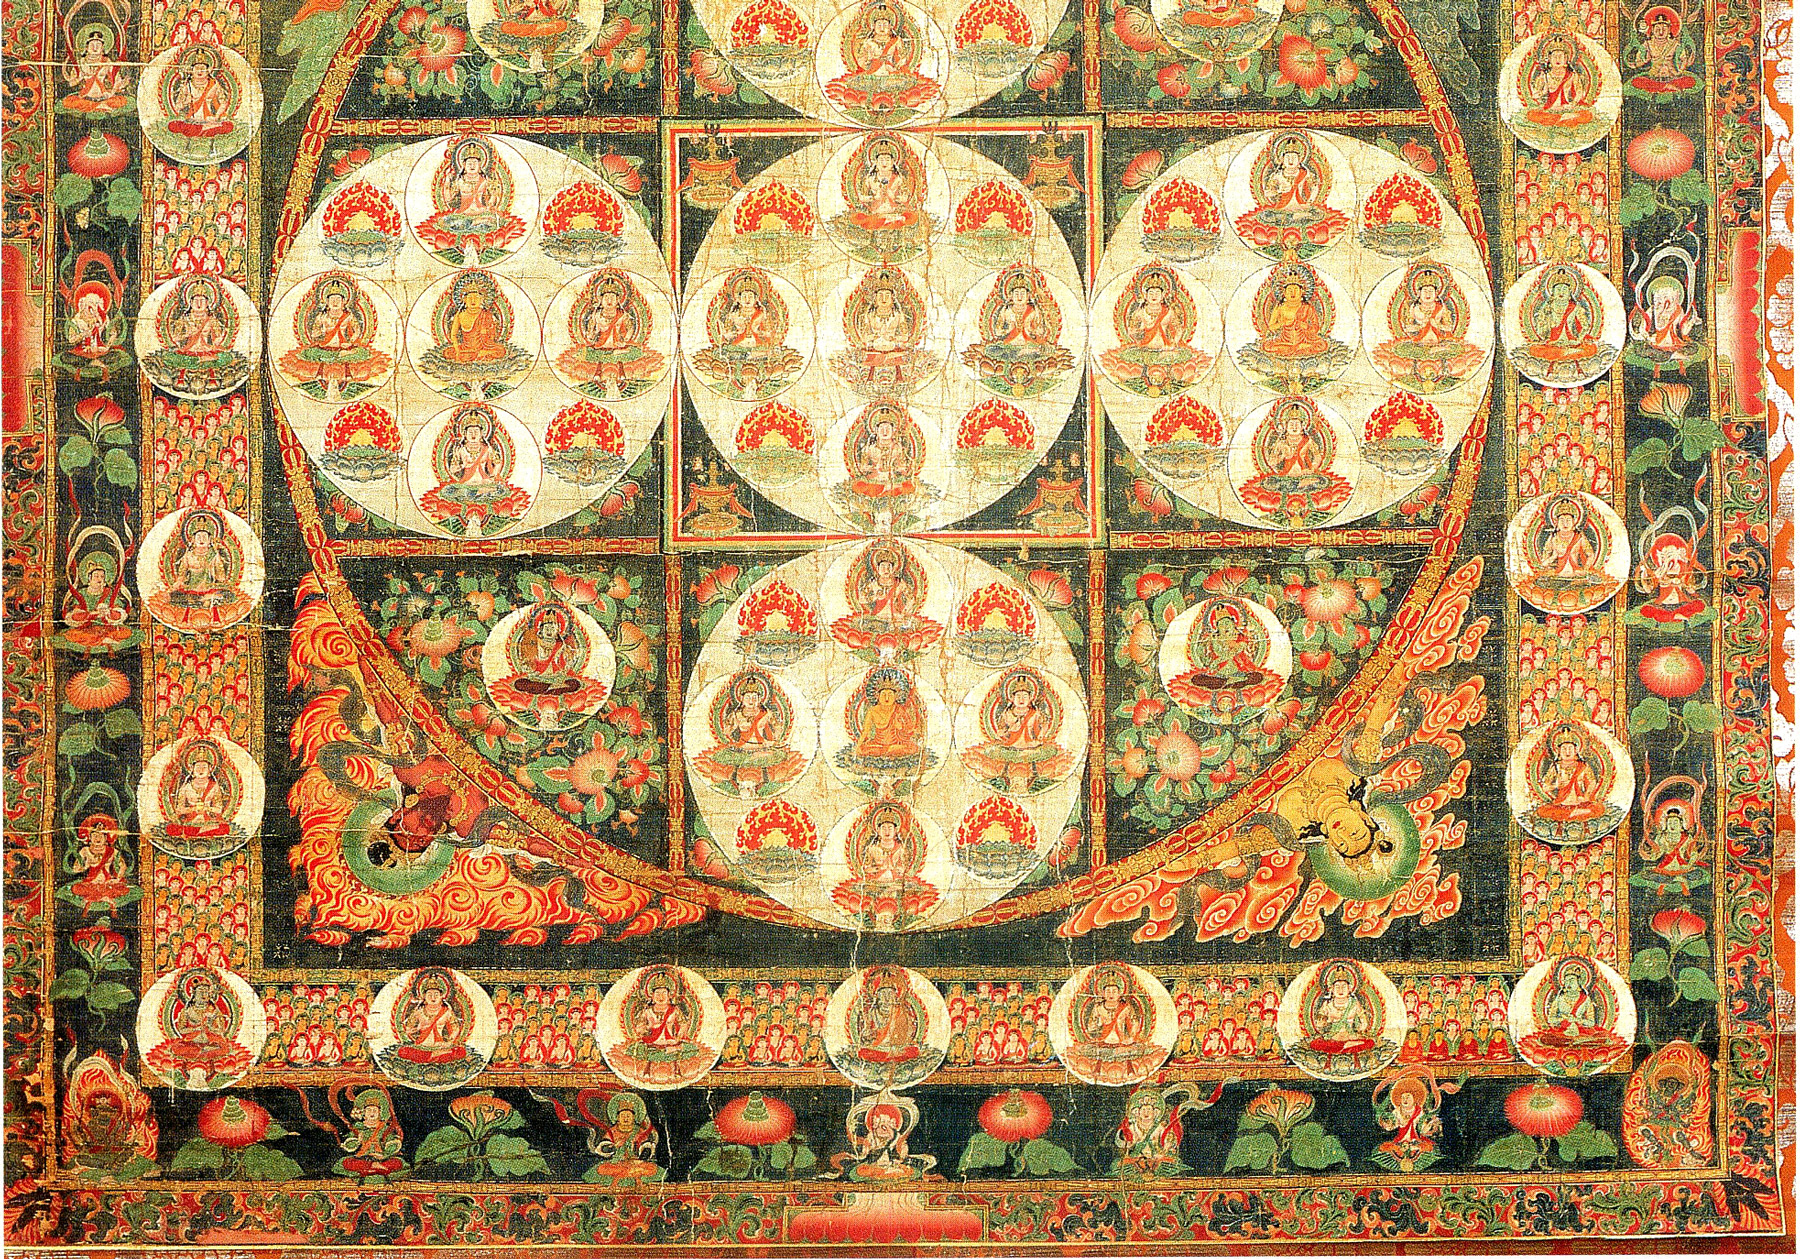 buddhist mandala, photography provieded by Wikipedia Commons: https://commons.wikimedia.org/wiki/File:Kongokai_81son_mandala.jpg